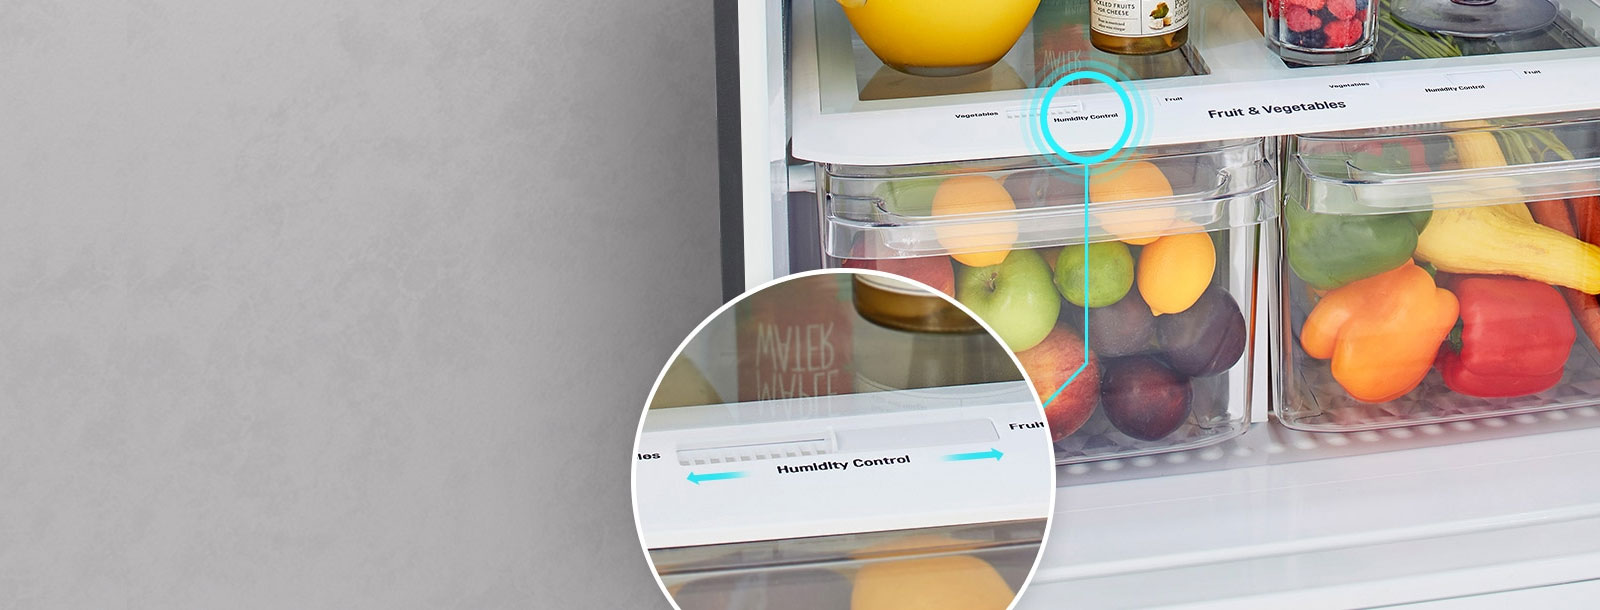 המגירות התחתונות של המקרר מלאות במזון. העיגול המוגדל מציג תקריב של ידית בקרת הלחות בחלק העליון של המגירה עם חיצים המציינים שניתן לשנות אותה.